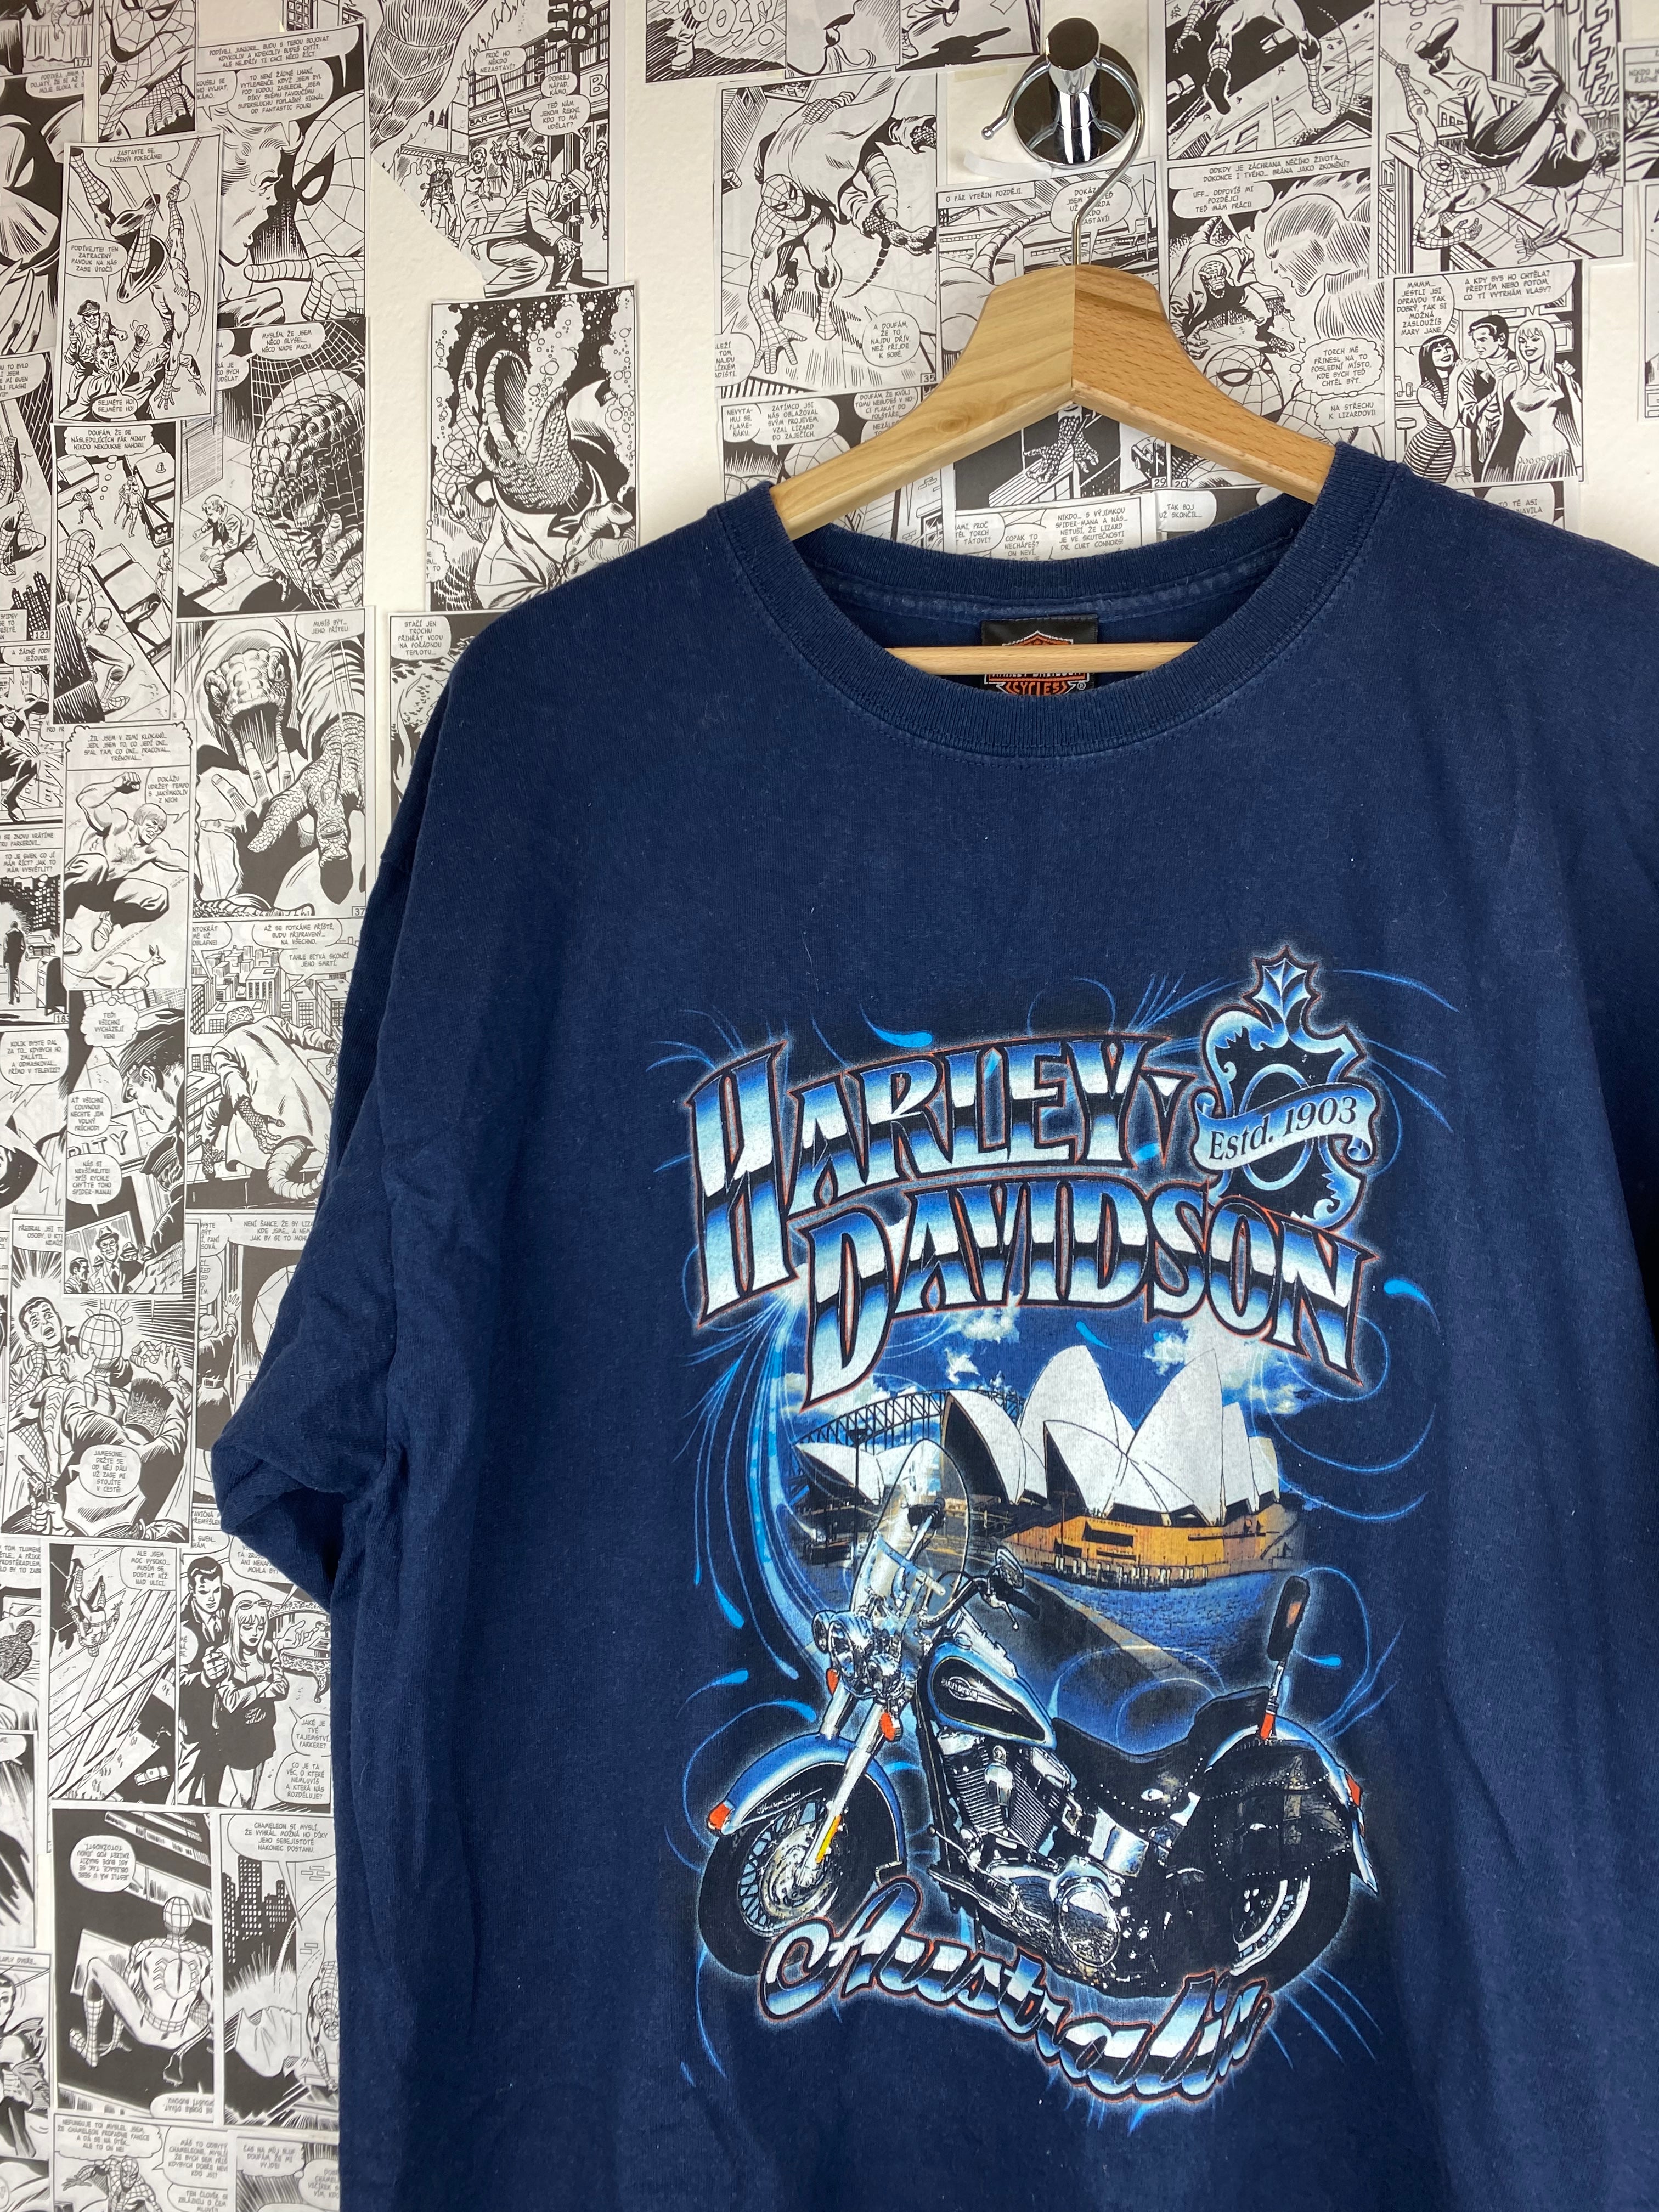 Vintage Harley Davidson - Sydney - Australia t-shirt